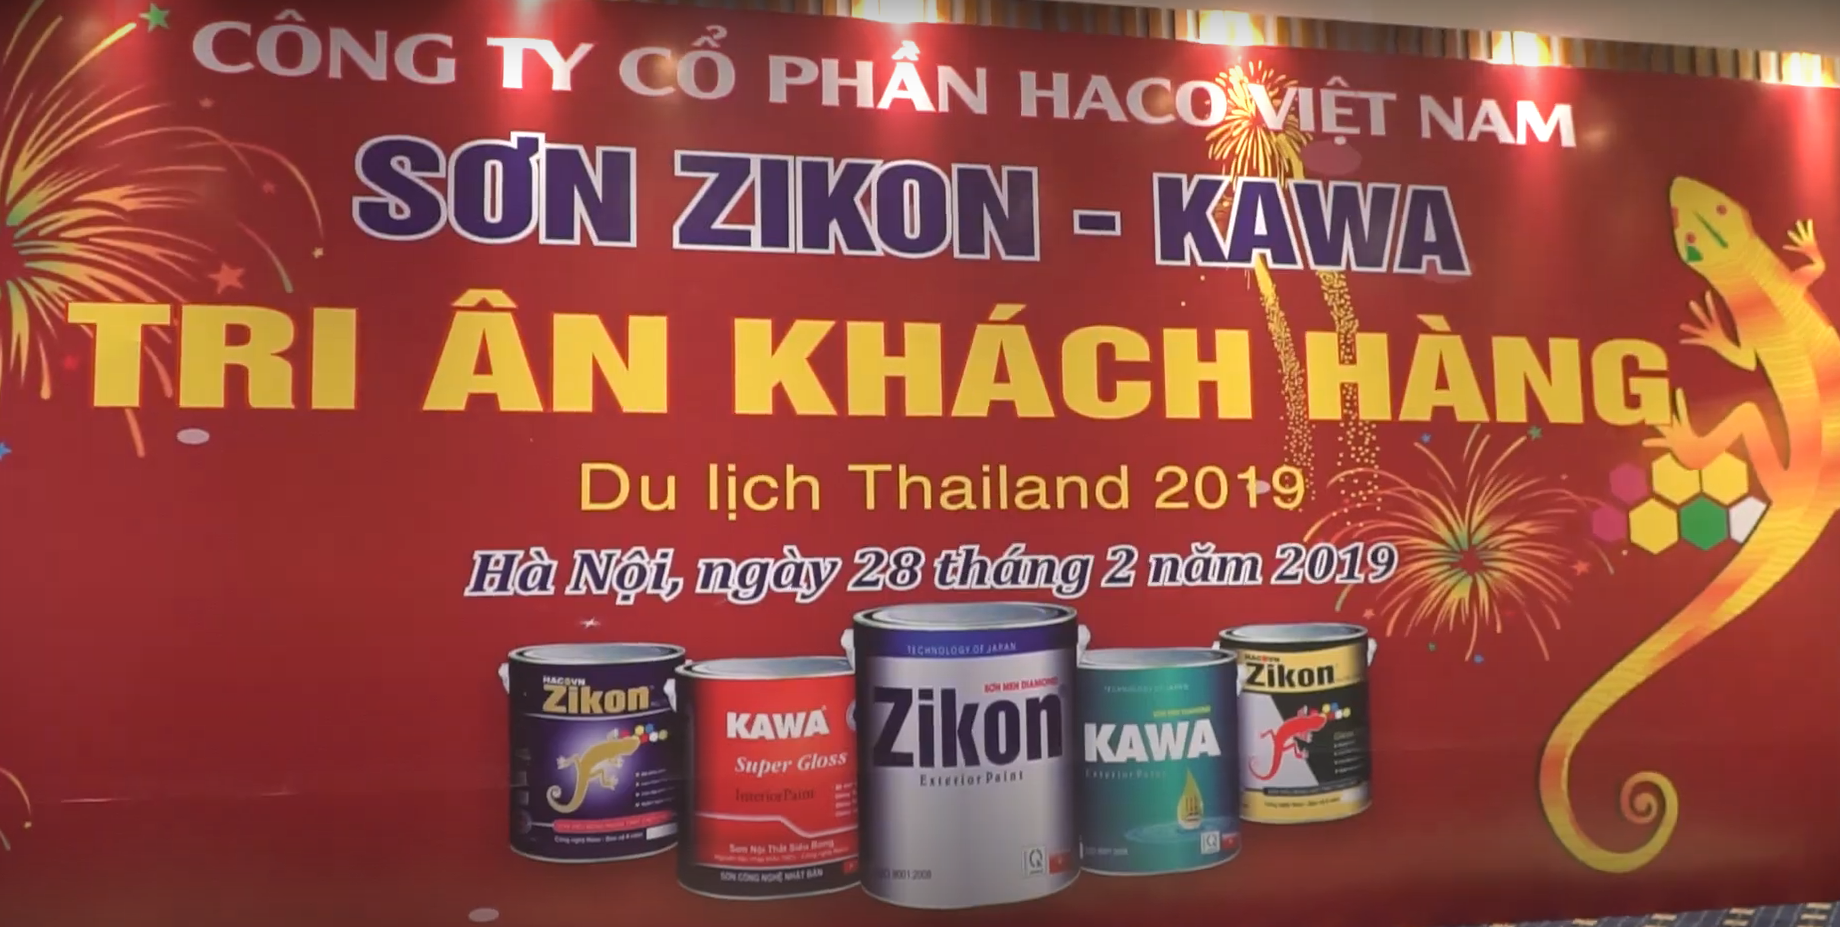 Hội Nghị Tri ân Khách hàng 2019 -Các NPP Du lịch Thái Lan Lần 2 Sơn ZIKON,KAWA